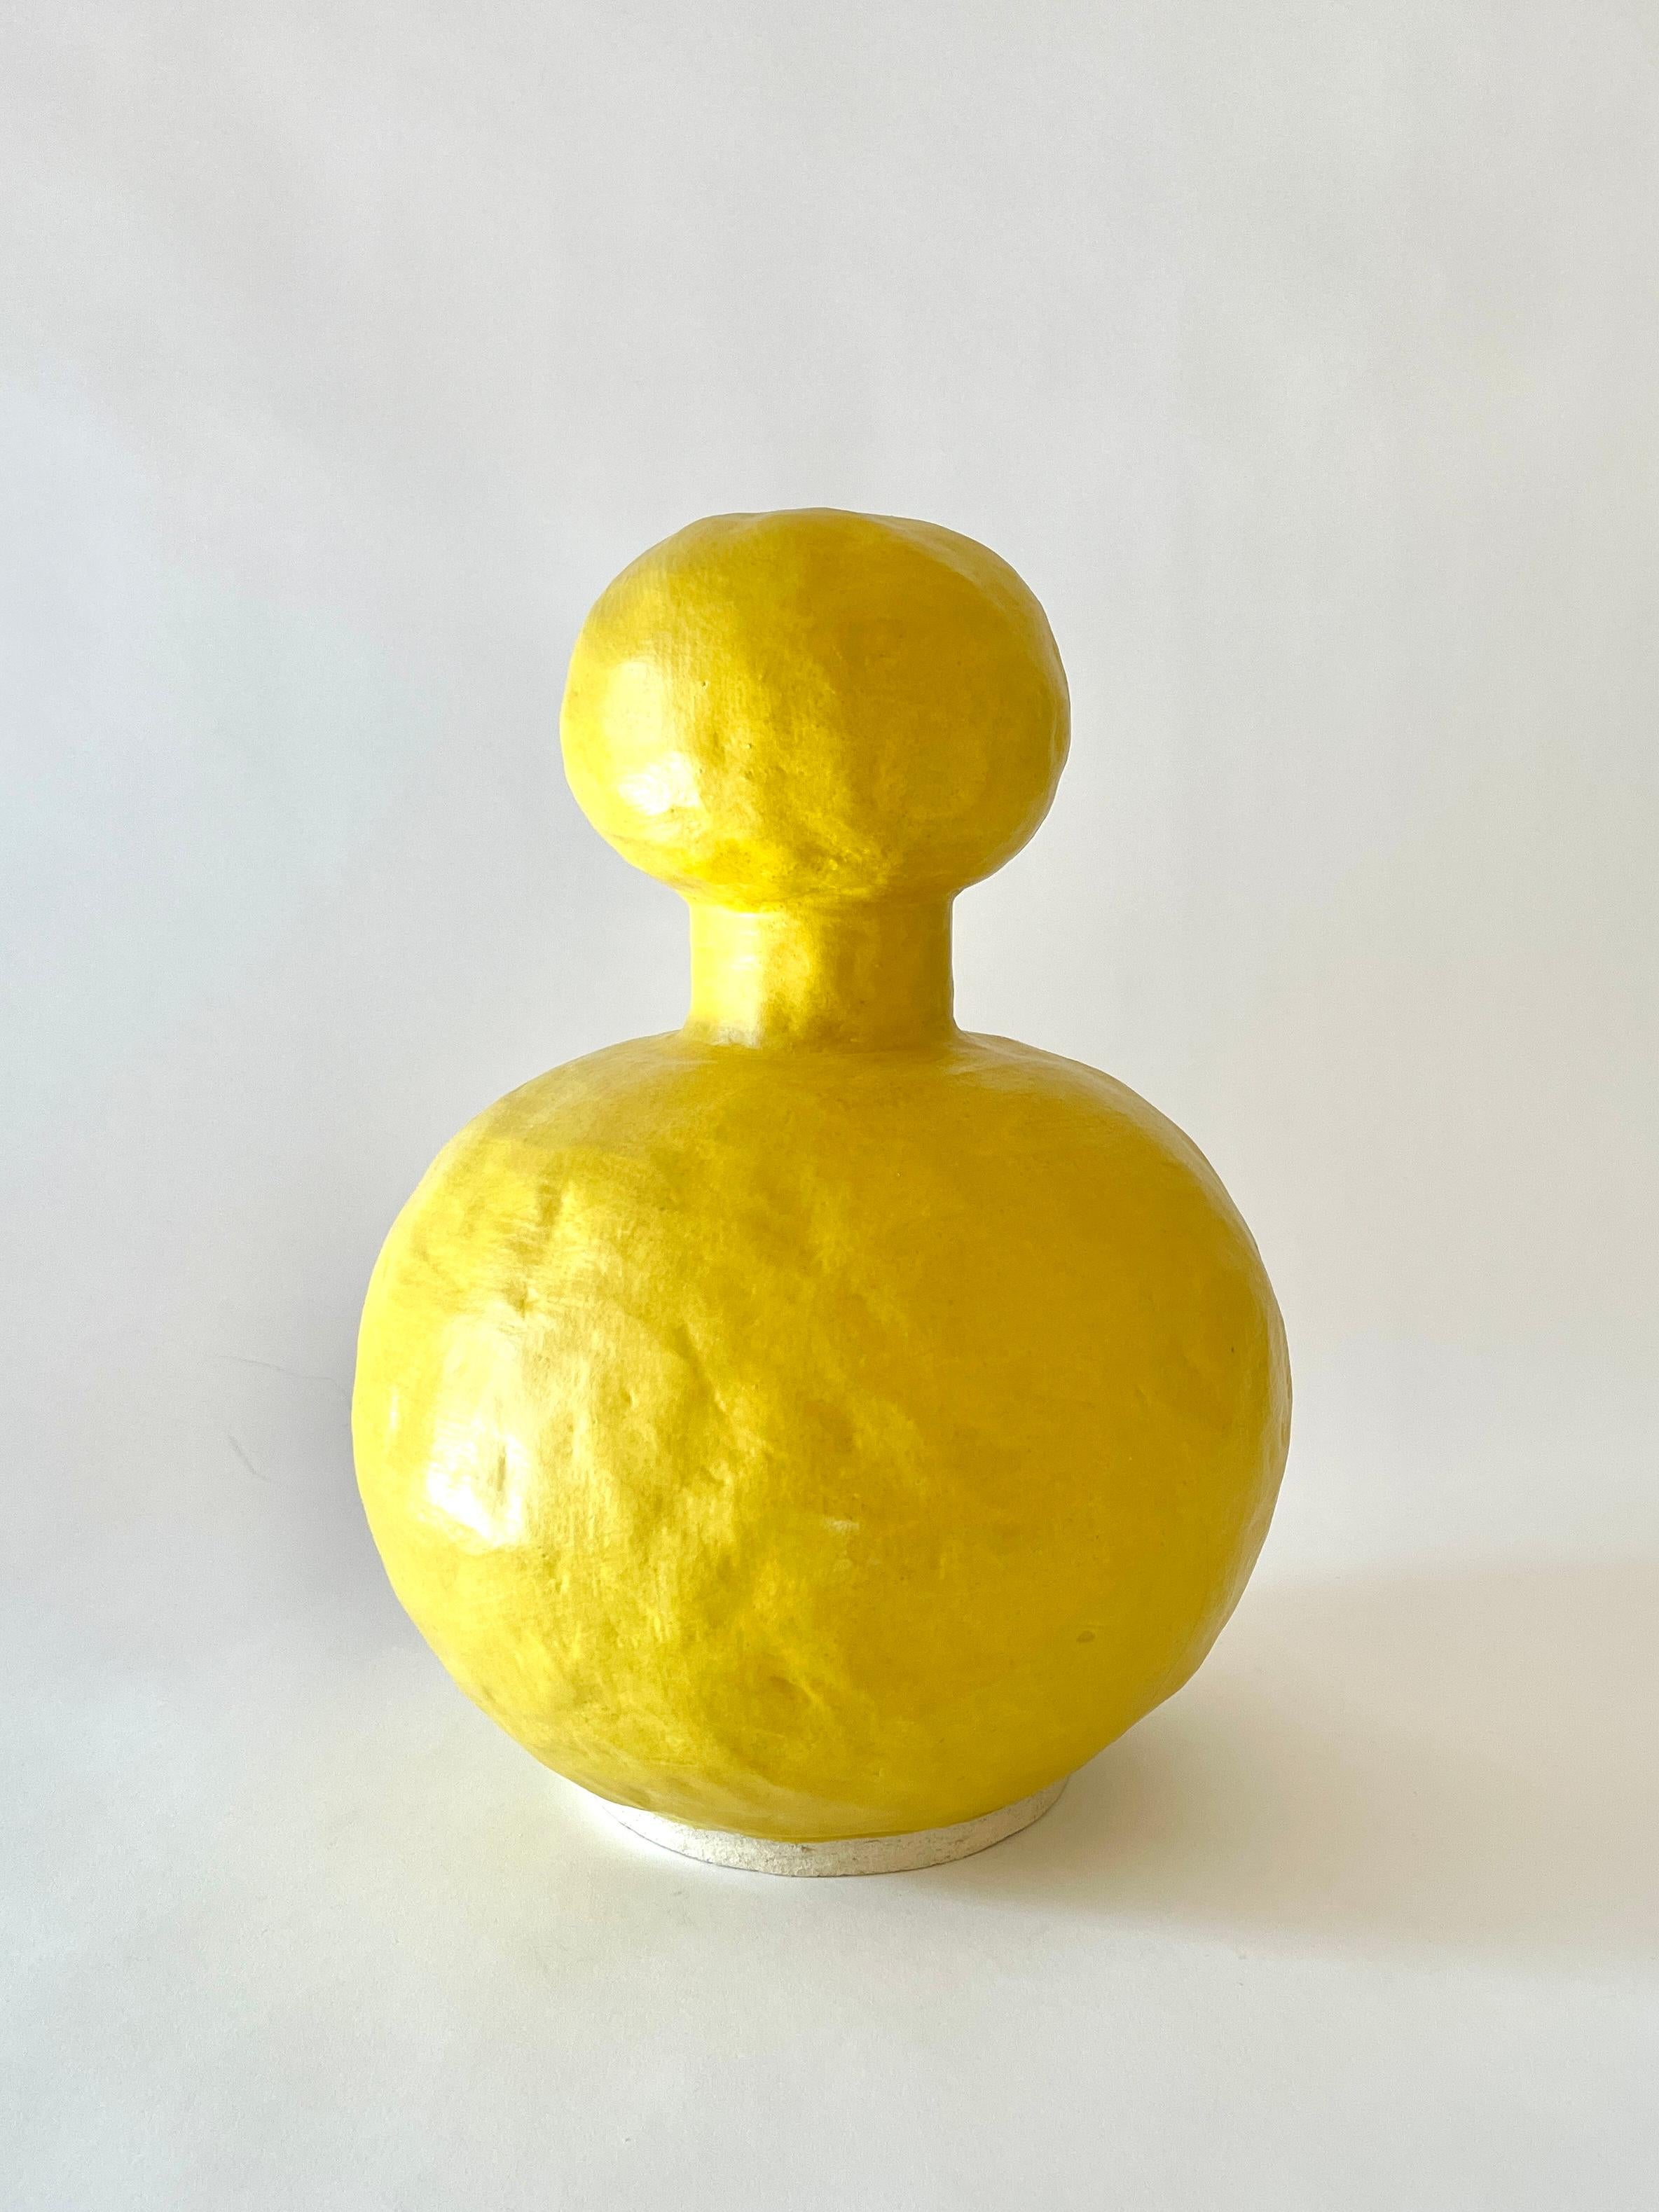 Gelbe vase Jules von Meg Morrison
MATERIALIEN: Keramisch.
Abmessungen: Ø 23 x H 32 cm.

Erhältlich in den Farben Schwarz, Weiß, Gelb und Rosa. Alle Größenangaben sind Richtwerte. Obwohl Vasen wasserdicht sind, kann sich am Boden Kondenswasser